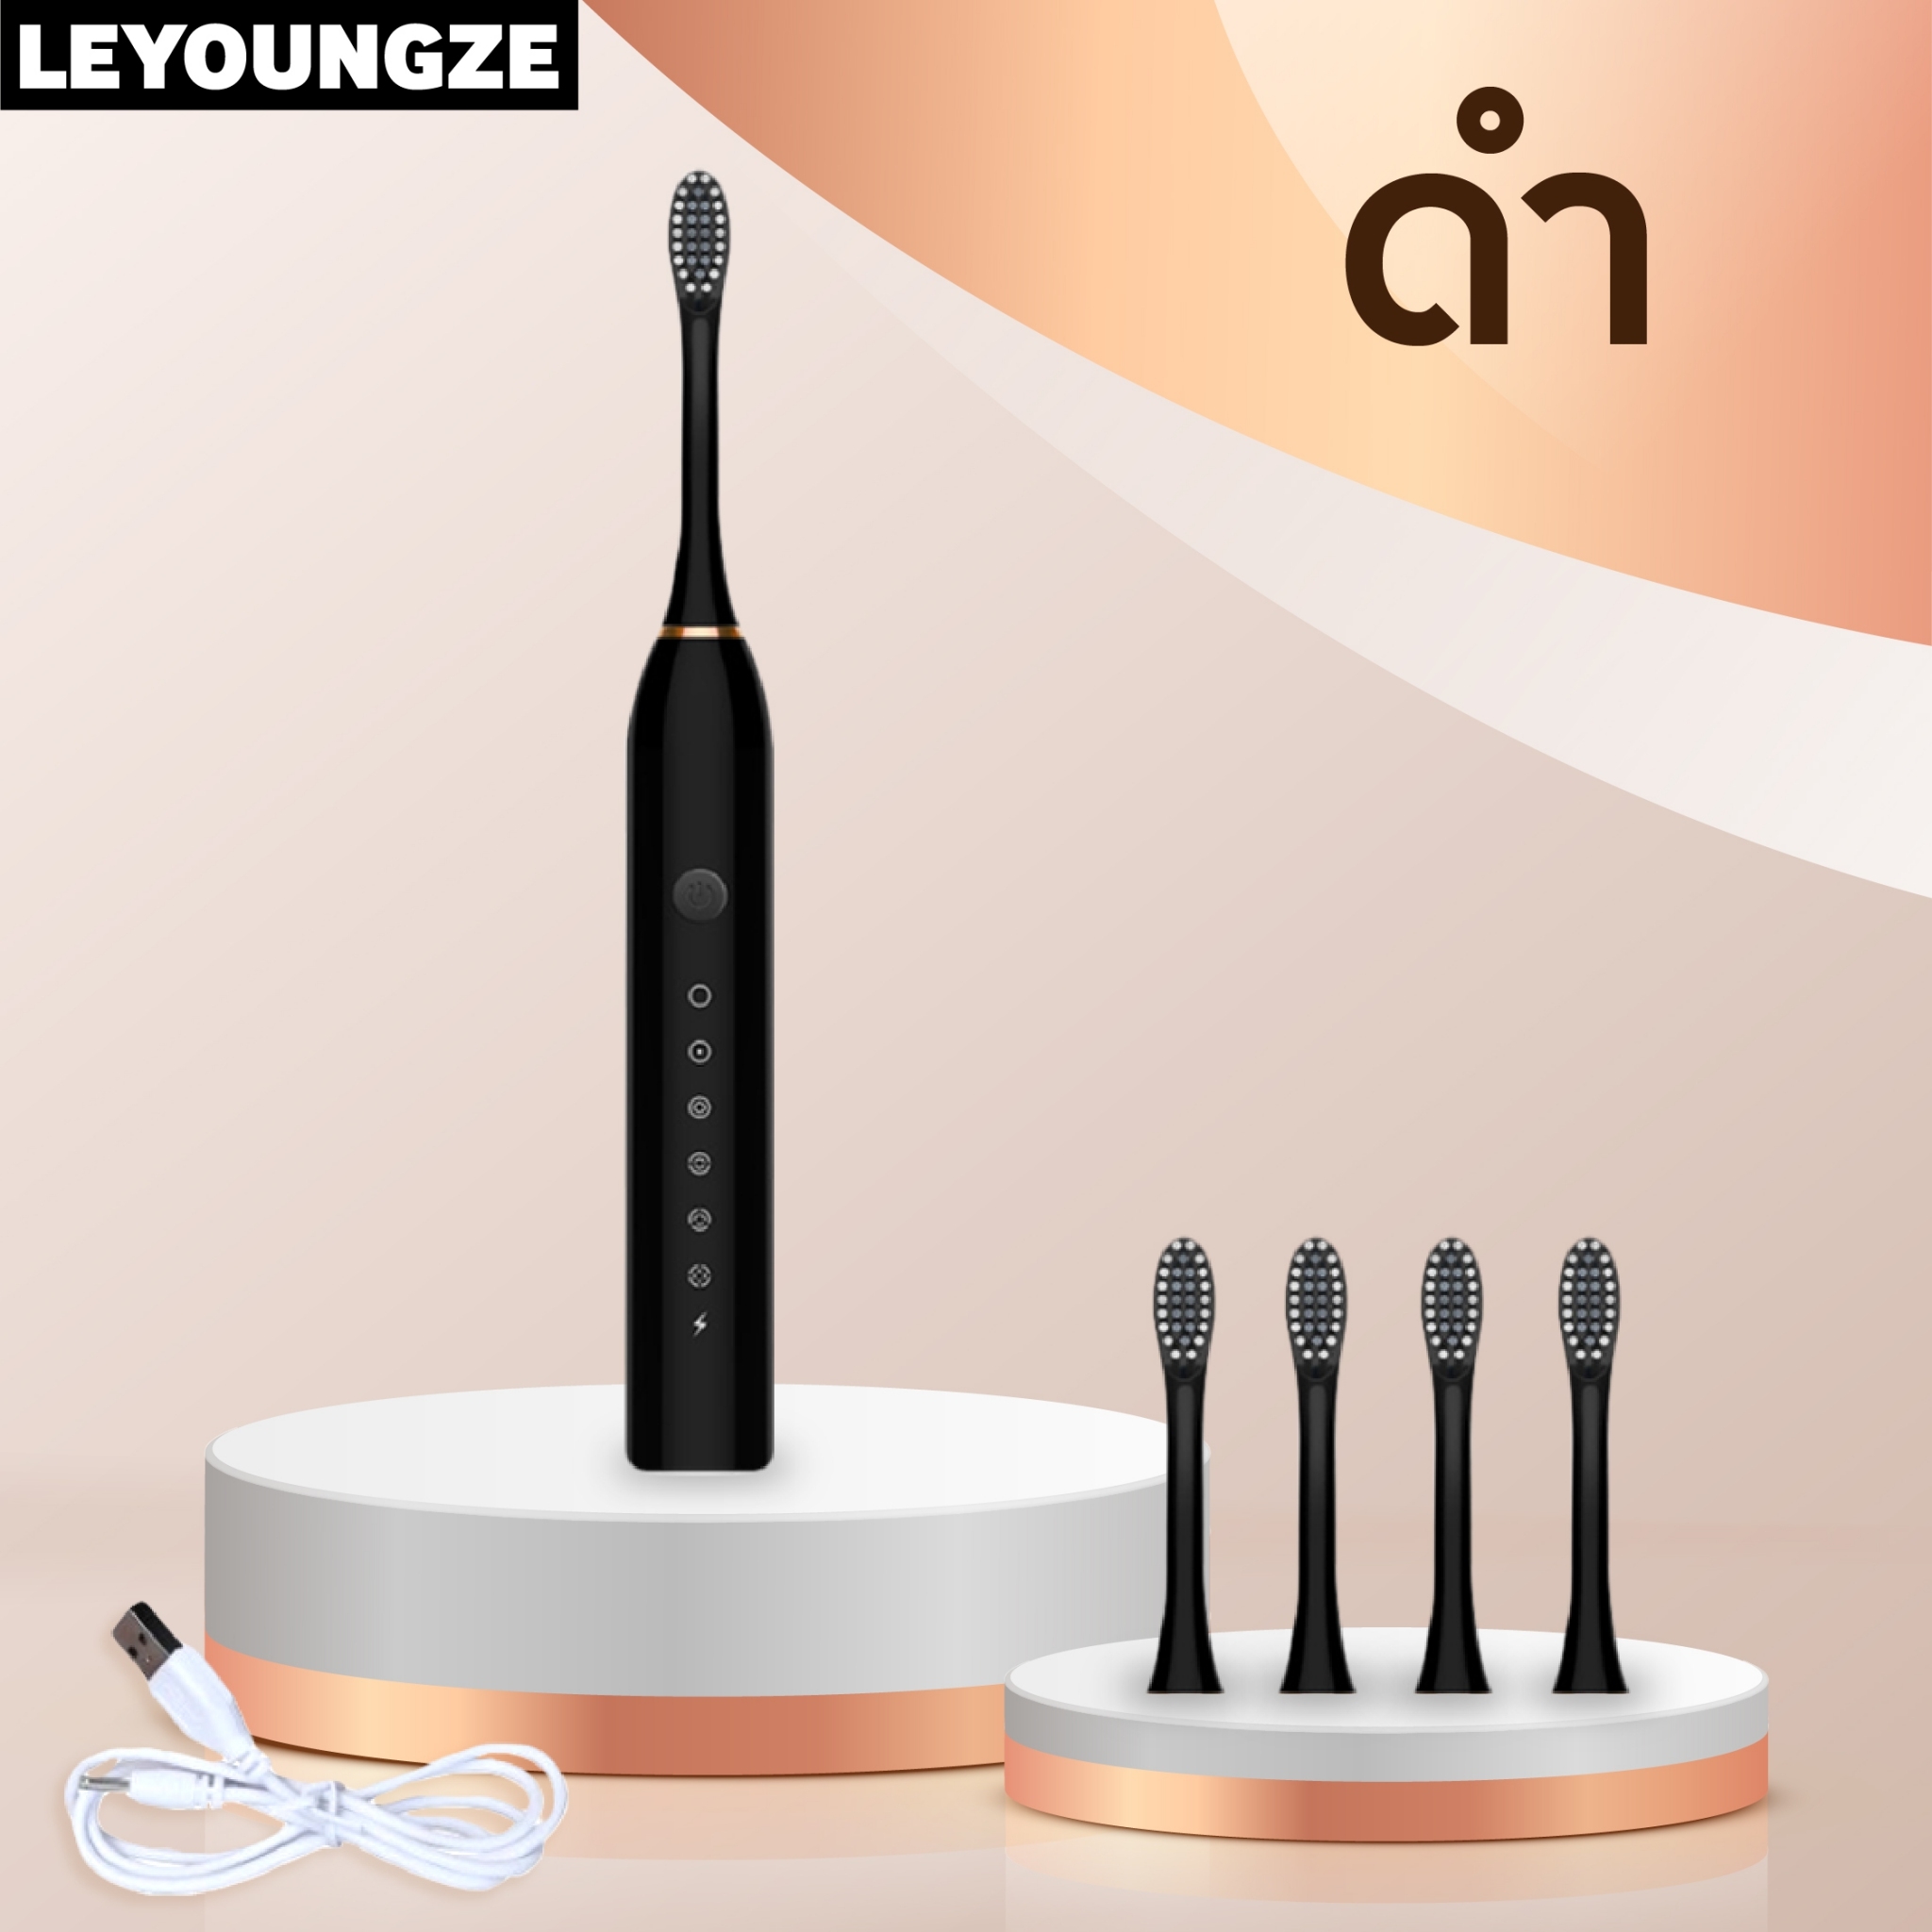 LeyoungZe แปรงสีฟันไฟฟ้า ขนแปรงนุ่ม พร้อมหัวแปรง 4 หัว หมุน 42000 รอบ/นาที กันน้ำ ปรับความแรงได้ 6 โหมด ใช้ได้ทั้ง เด็ก ผู้ใหญ่